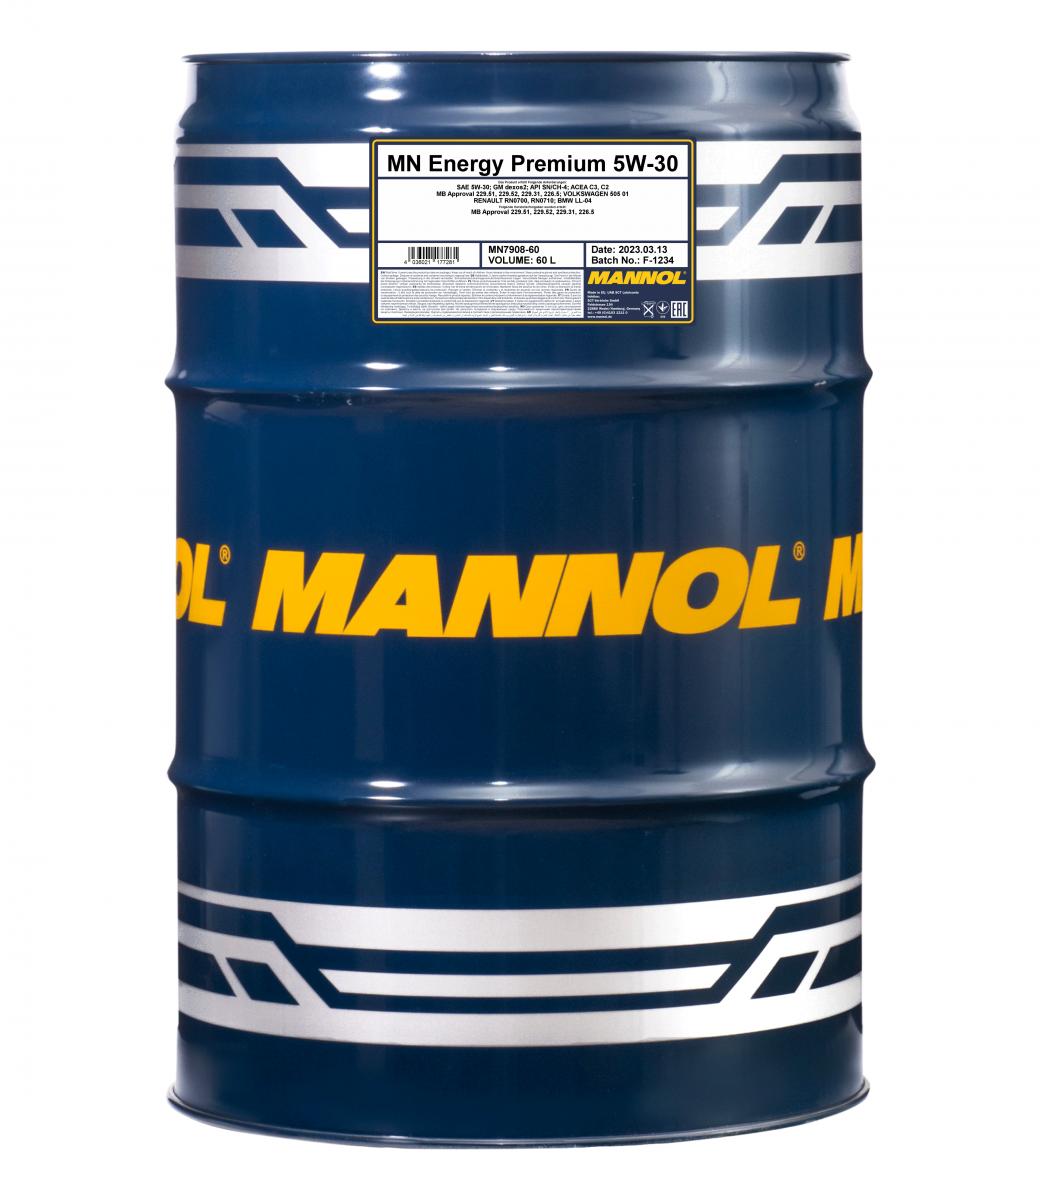 60 Liter MANNOL Energy Premium 5W-30 Leichtlauf Motoröl API SN/CH-4 ACEA C3